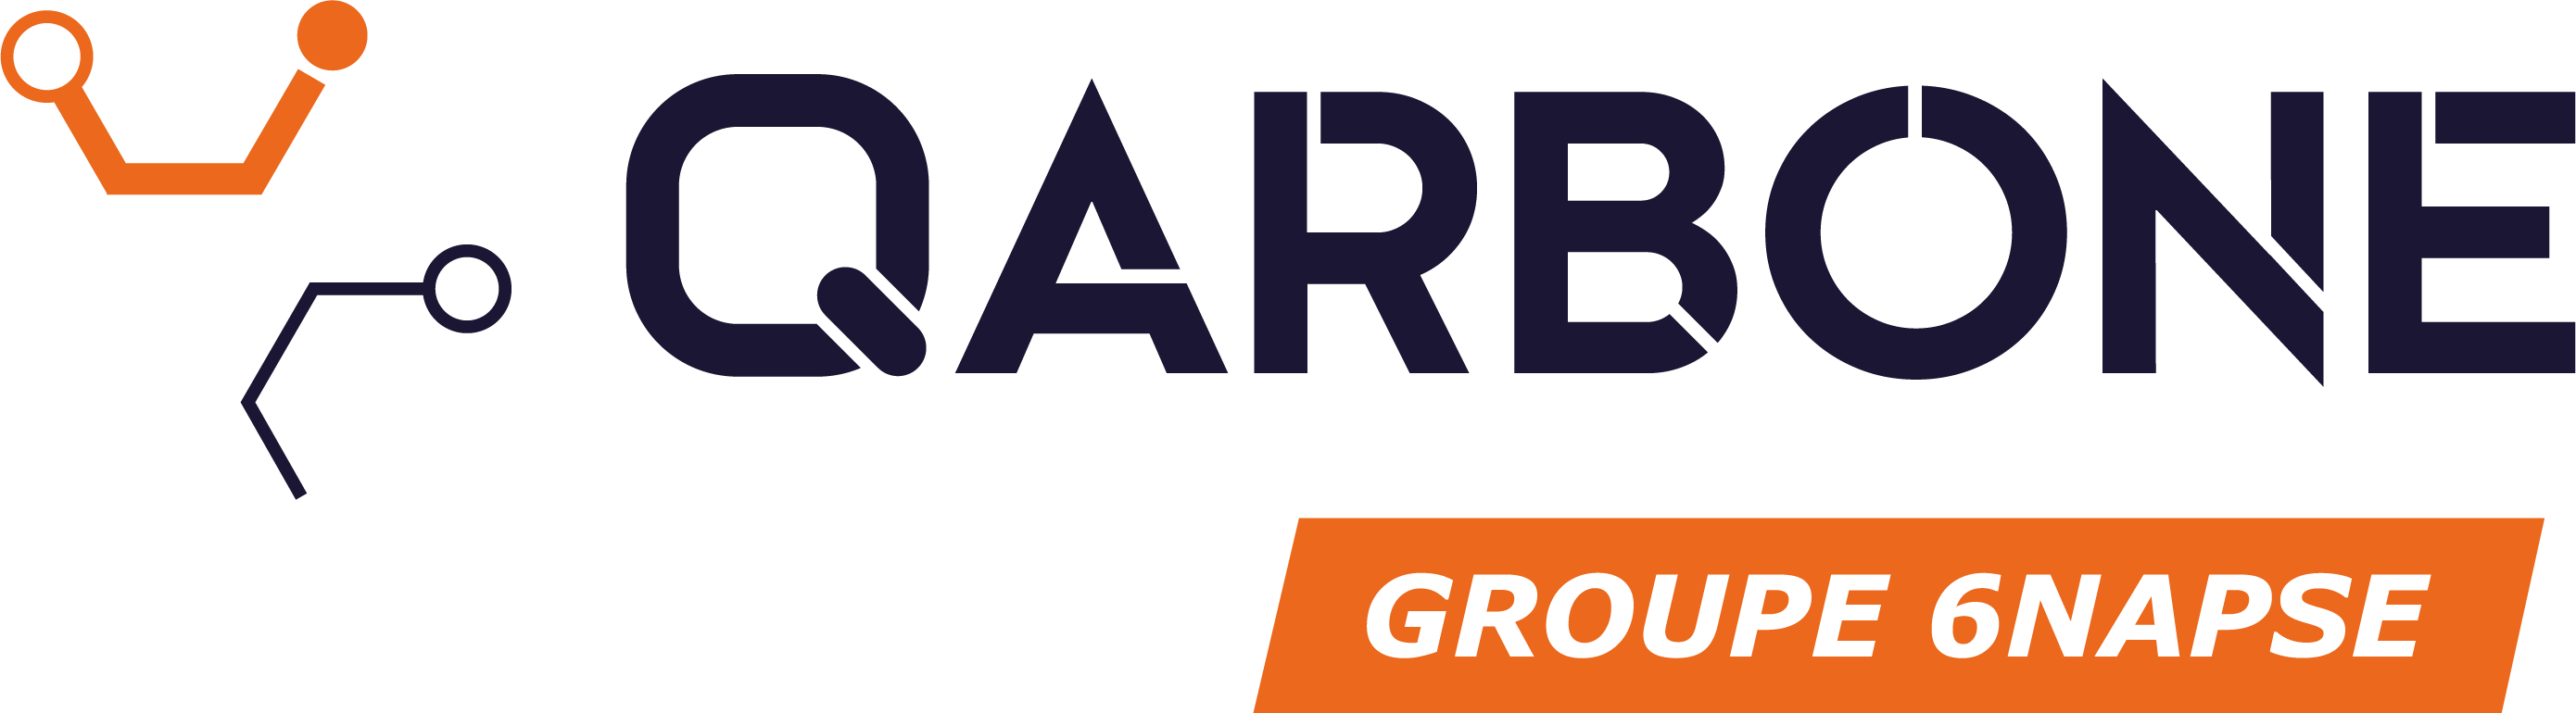 Logo adherent QARBONE (GROUPE 6NAPSE)